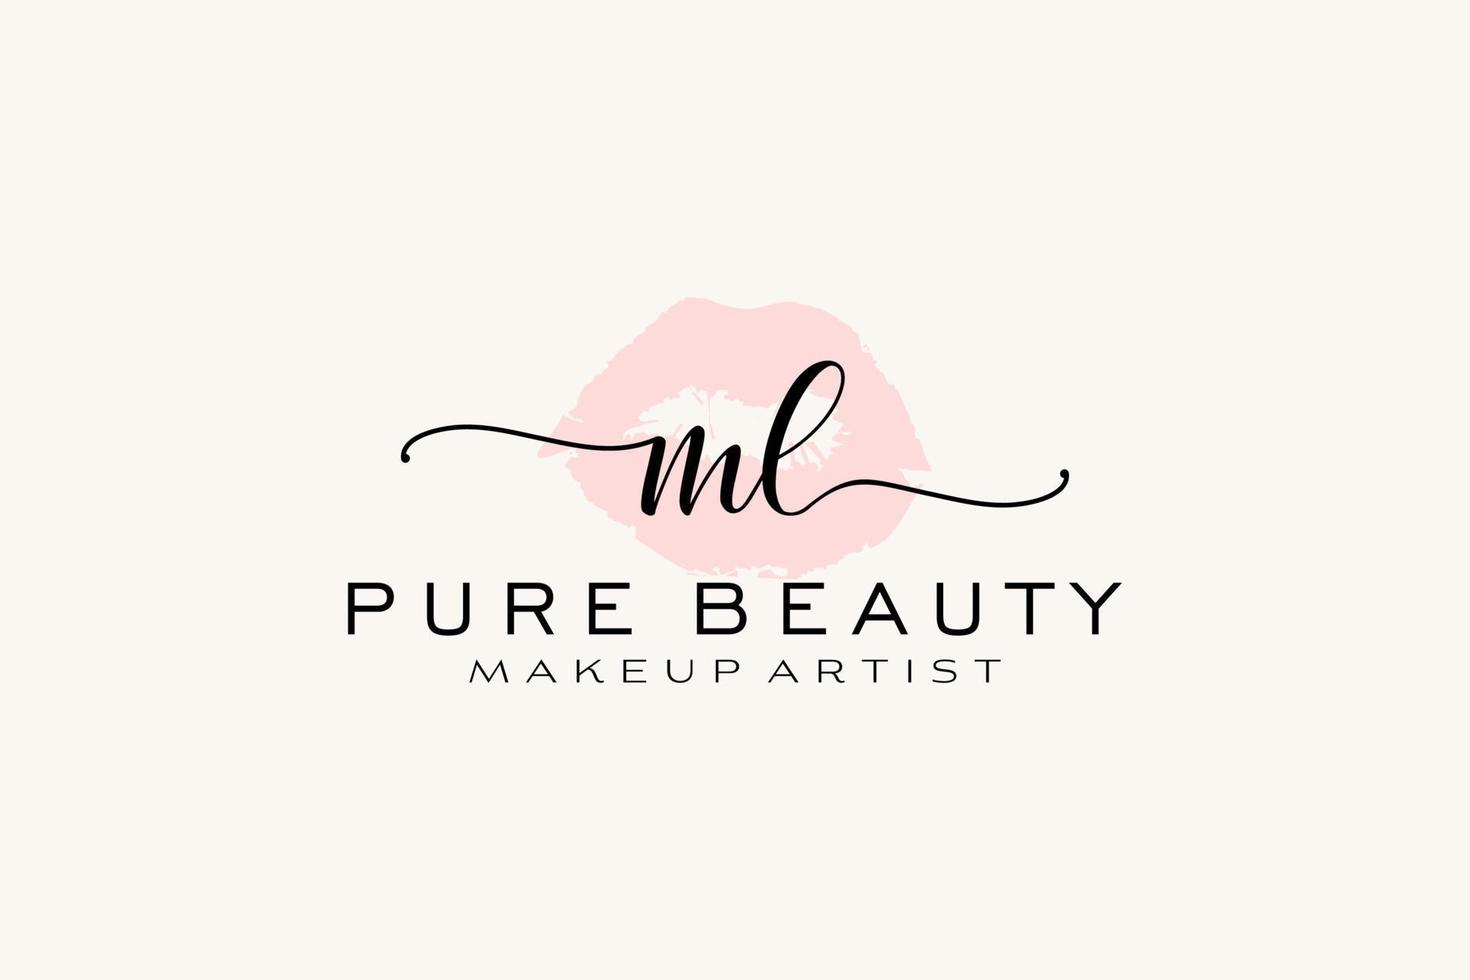 création initiale de logo préfabriqué pour les lèvres aquarelle ml, logo pour la marque d'entreprise de maquilleur, création de logo de boutique de beauté blush, logo de calligraphie avec modèle créatif. vecteur